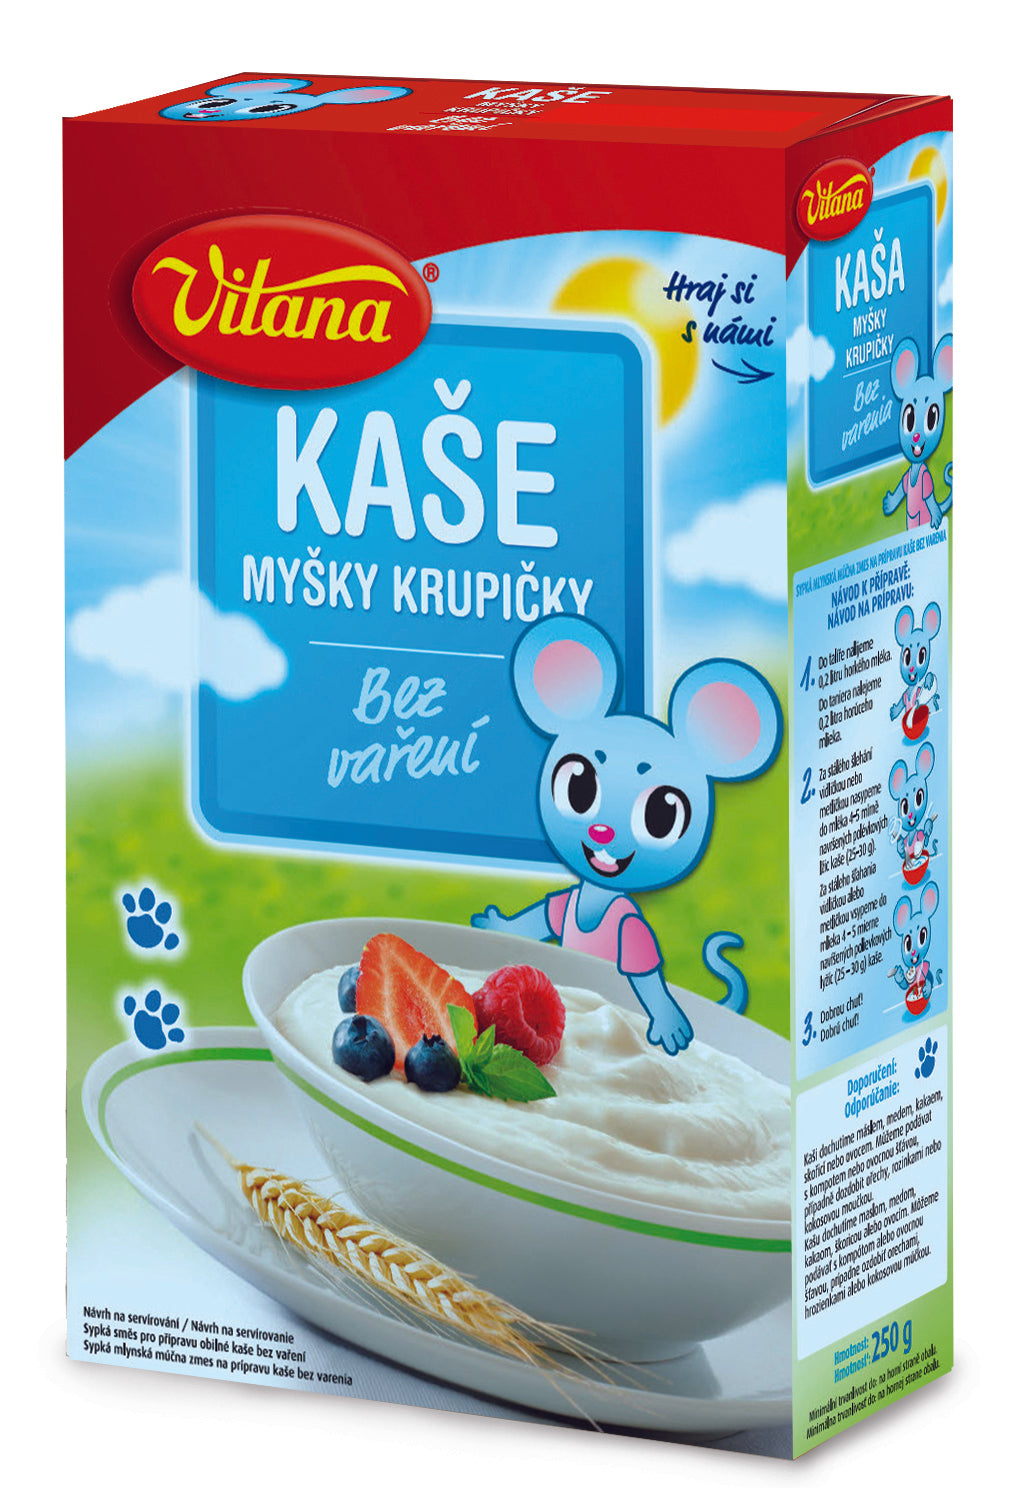 Vitana Kase Misky Krupicky 